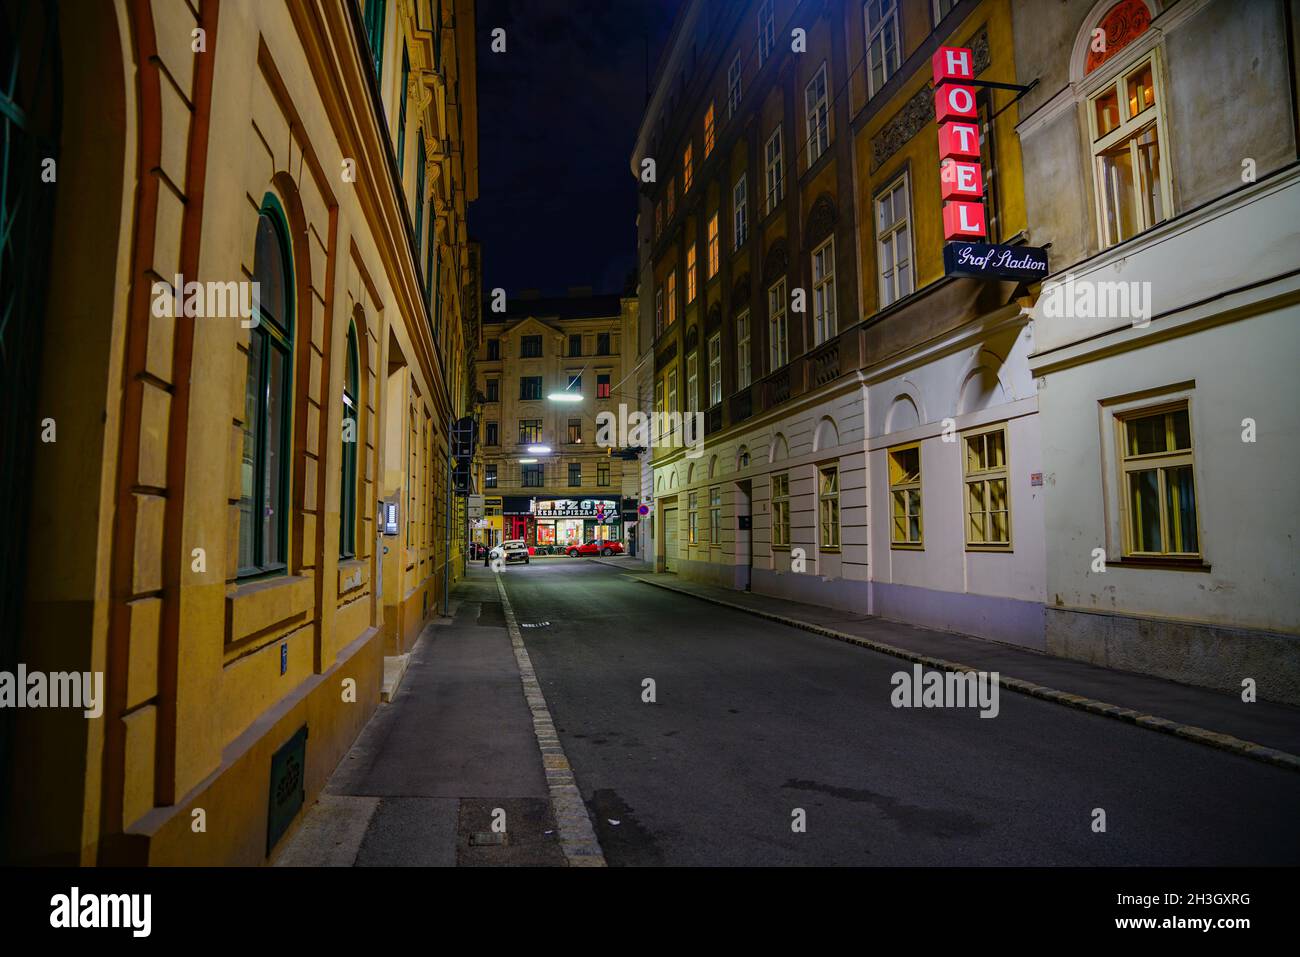 Vienne Autriche - septembre 5 2017 ; vue le long de la rue étroite du quartier des affaires urbaines convergeant vers l'intersection avec le panneau lumineux rouge de l'hôtel Banque D'Images